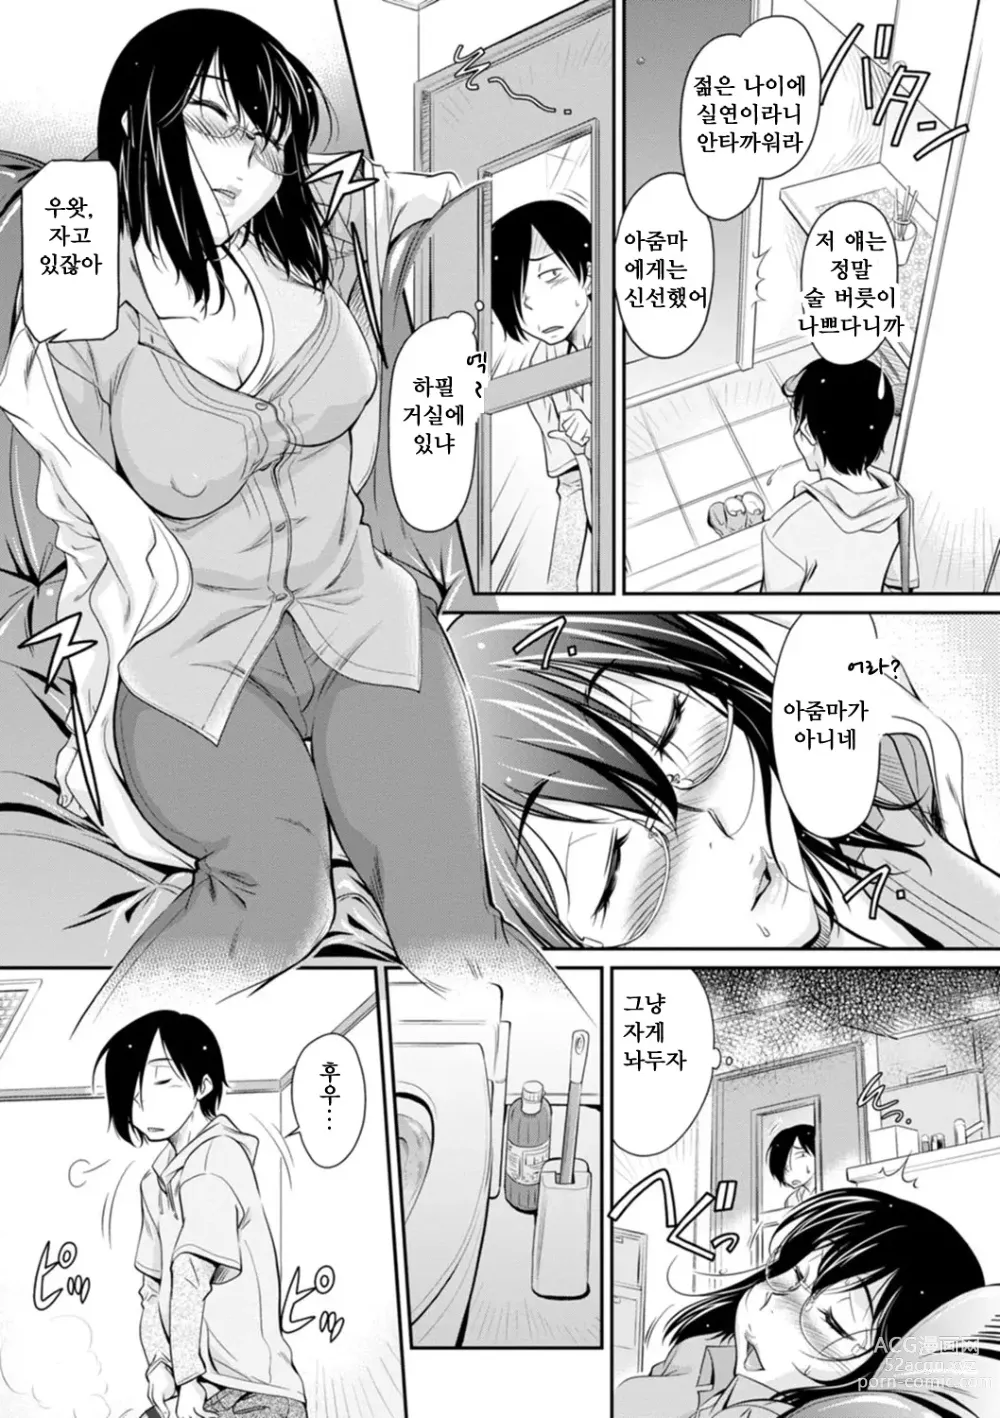 Page 9 of manga 보복 여주임 ~마운팅녀가 몸부림치다~